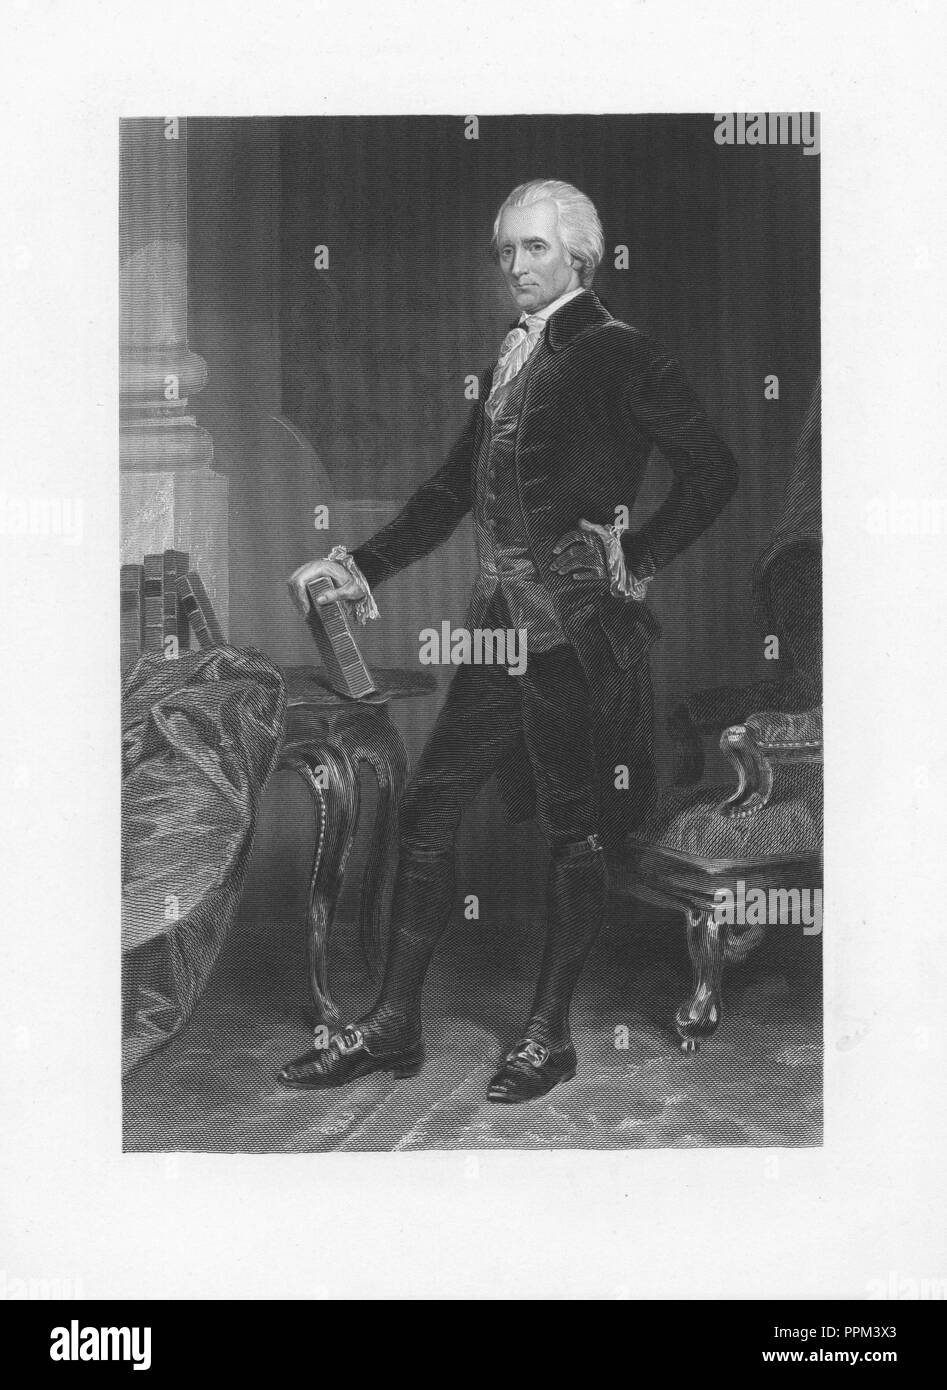 Incisi ritratto di Richard Henry Lee, firmatario degli articoli della Confederazione e gli Stati Uniti la dichiarazione di indipendenza, un americano più da Westmoreland County, Virginia, 1845. Dalla Biblioteca Pubblica di New York. () Foto Stock